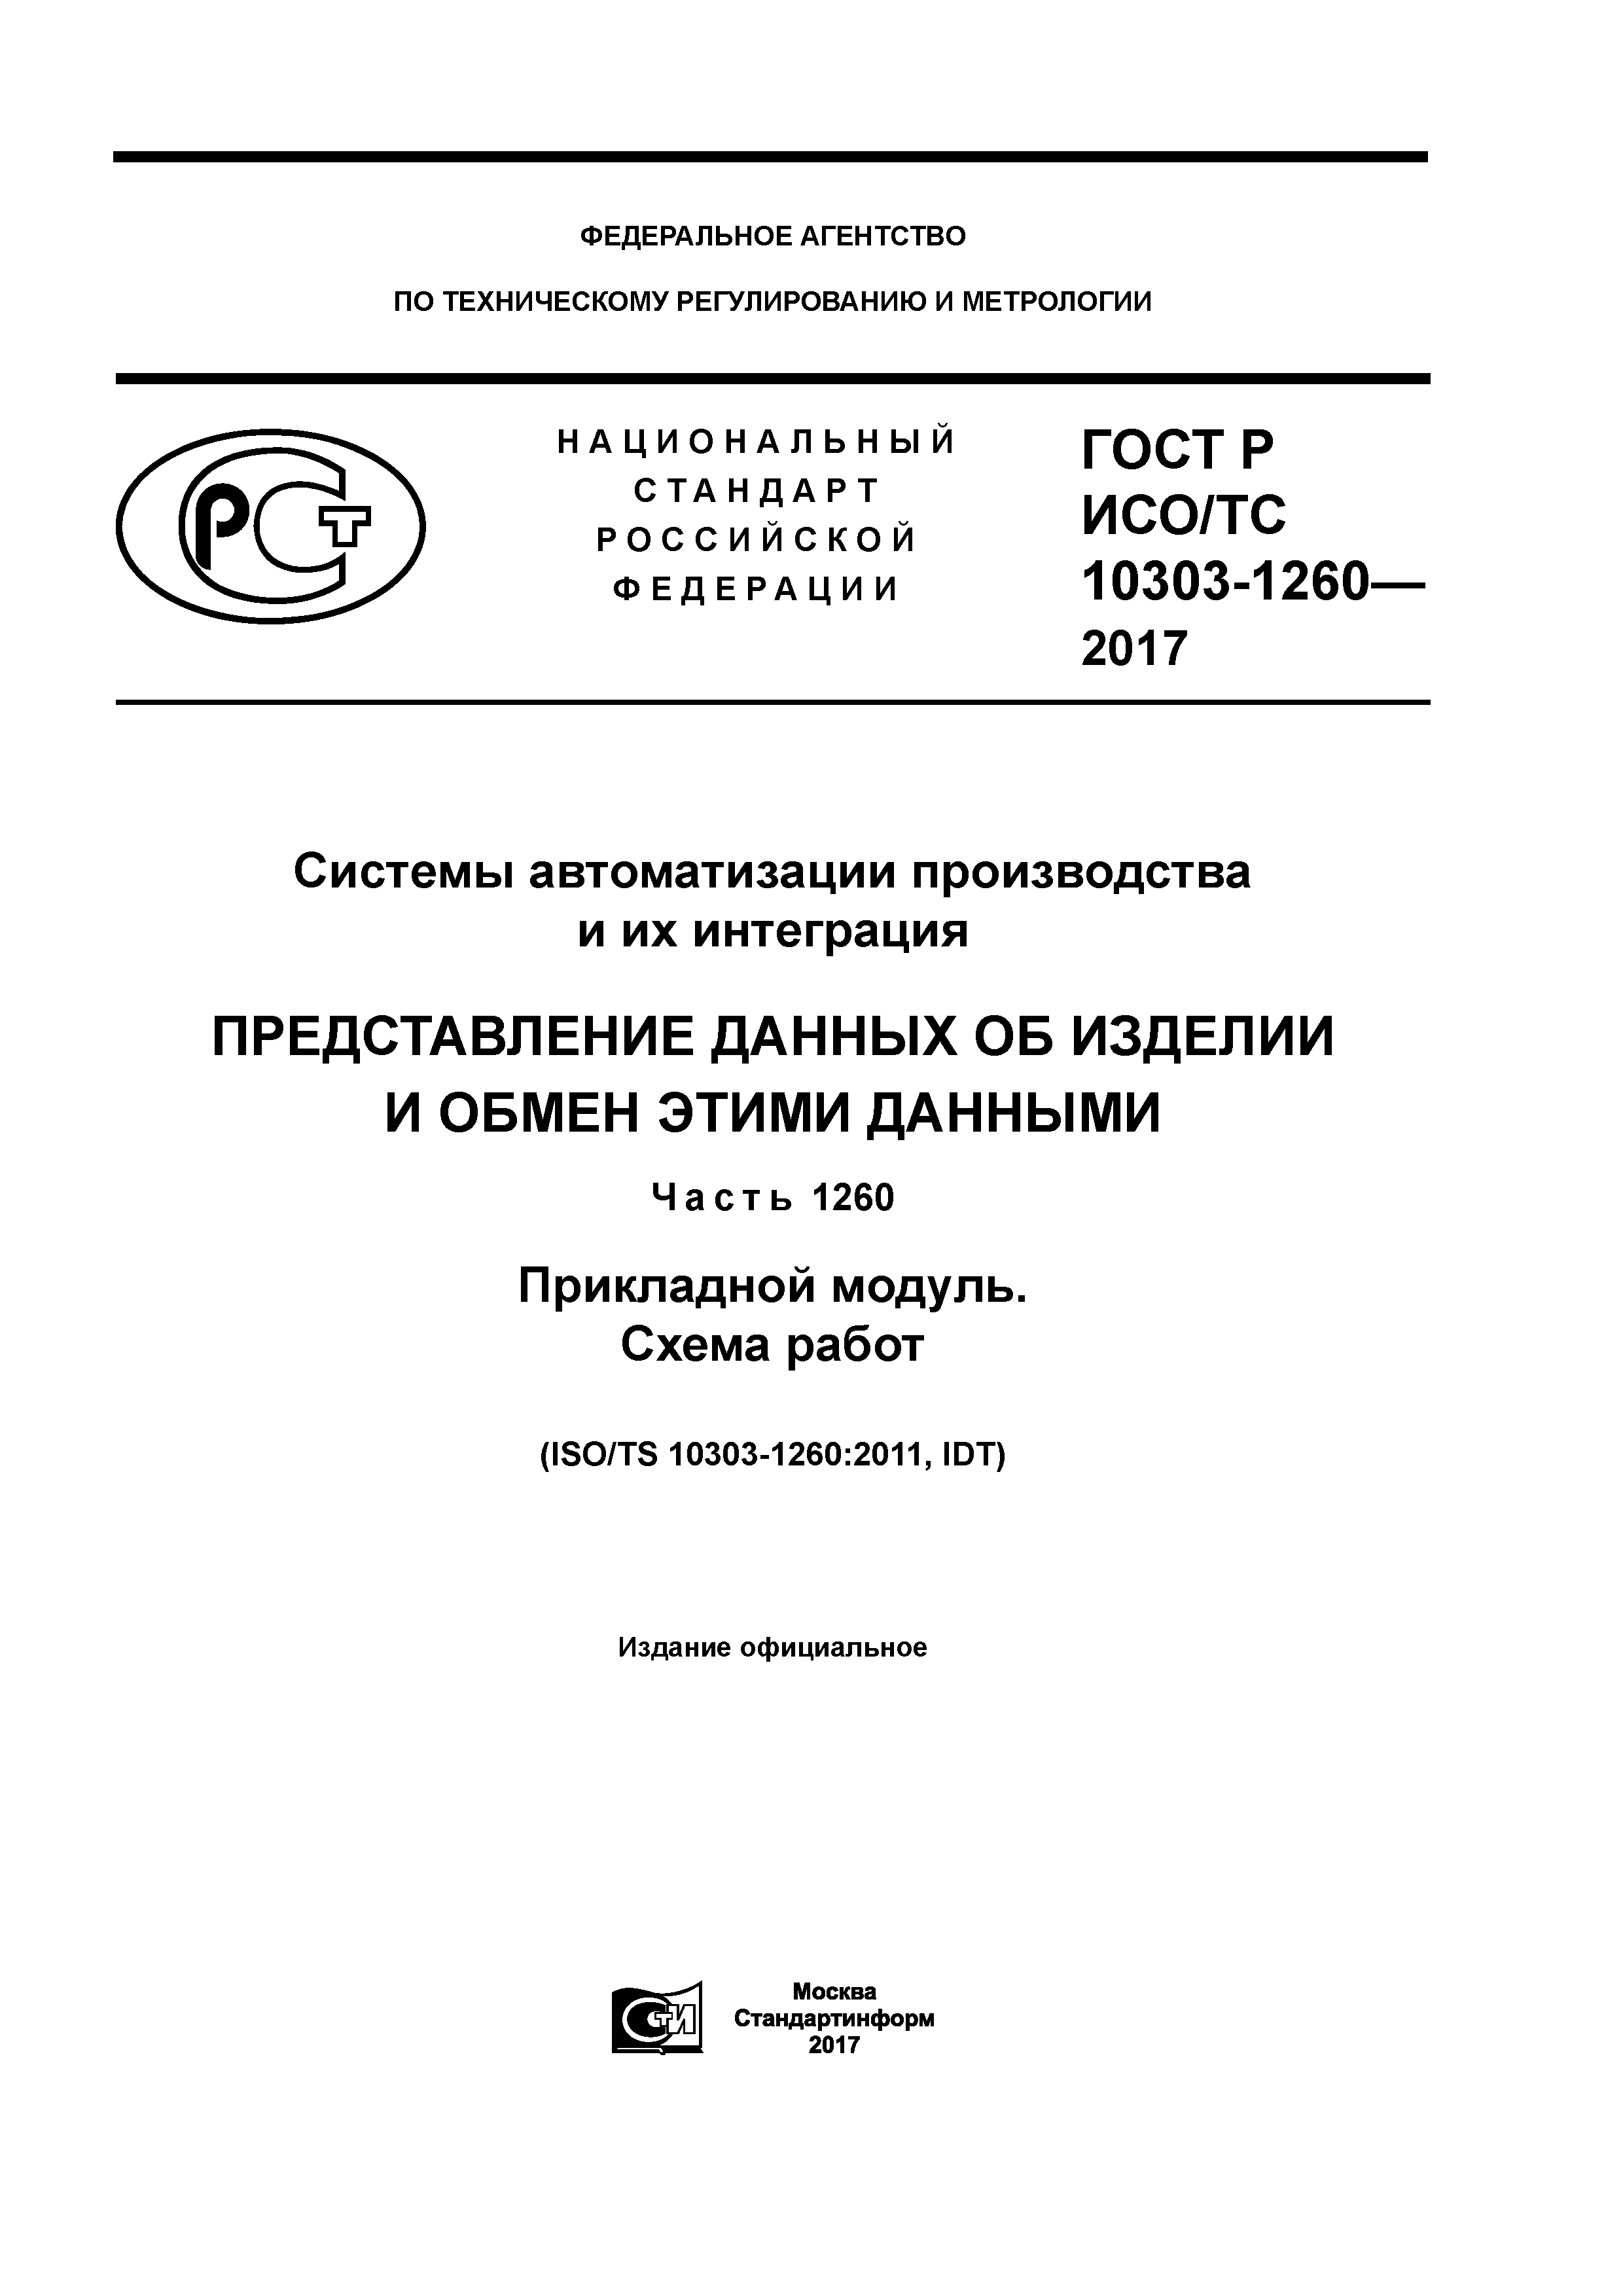 ГОСТ Р ИСО/ТС 10303-1260-2017